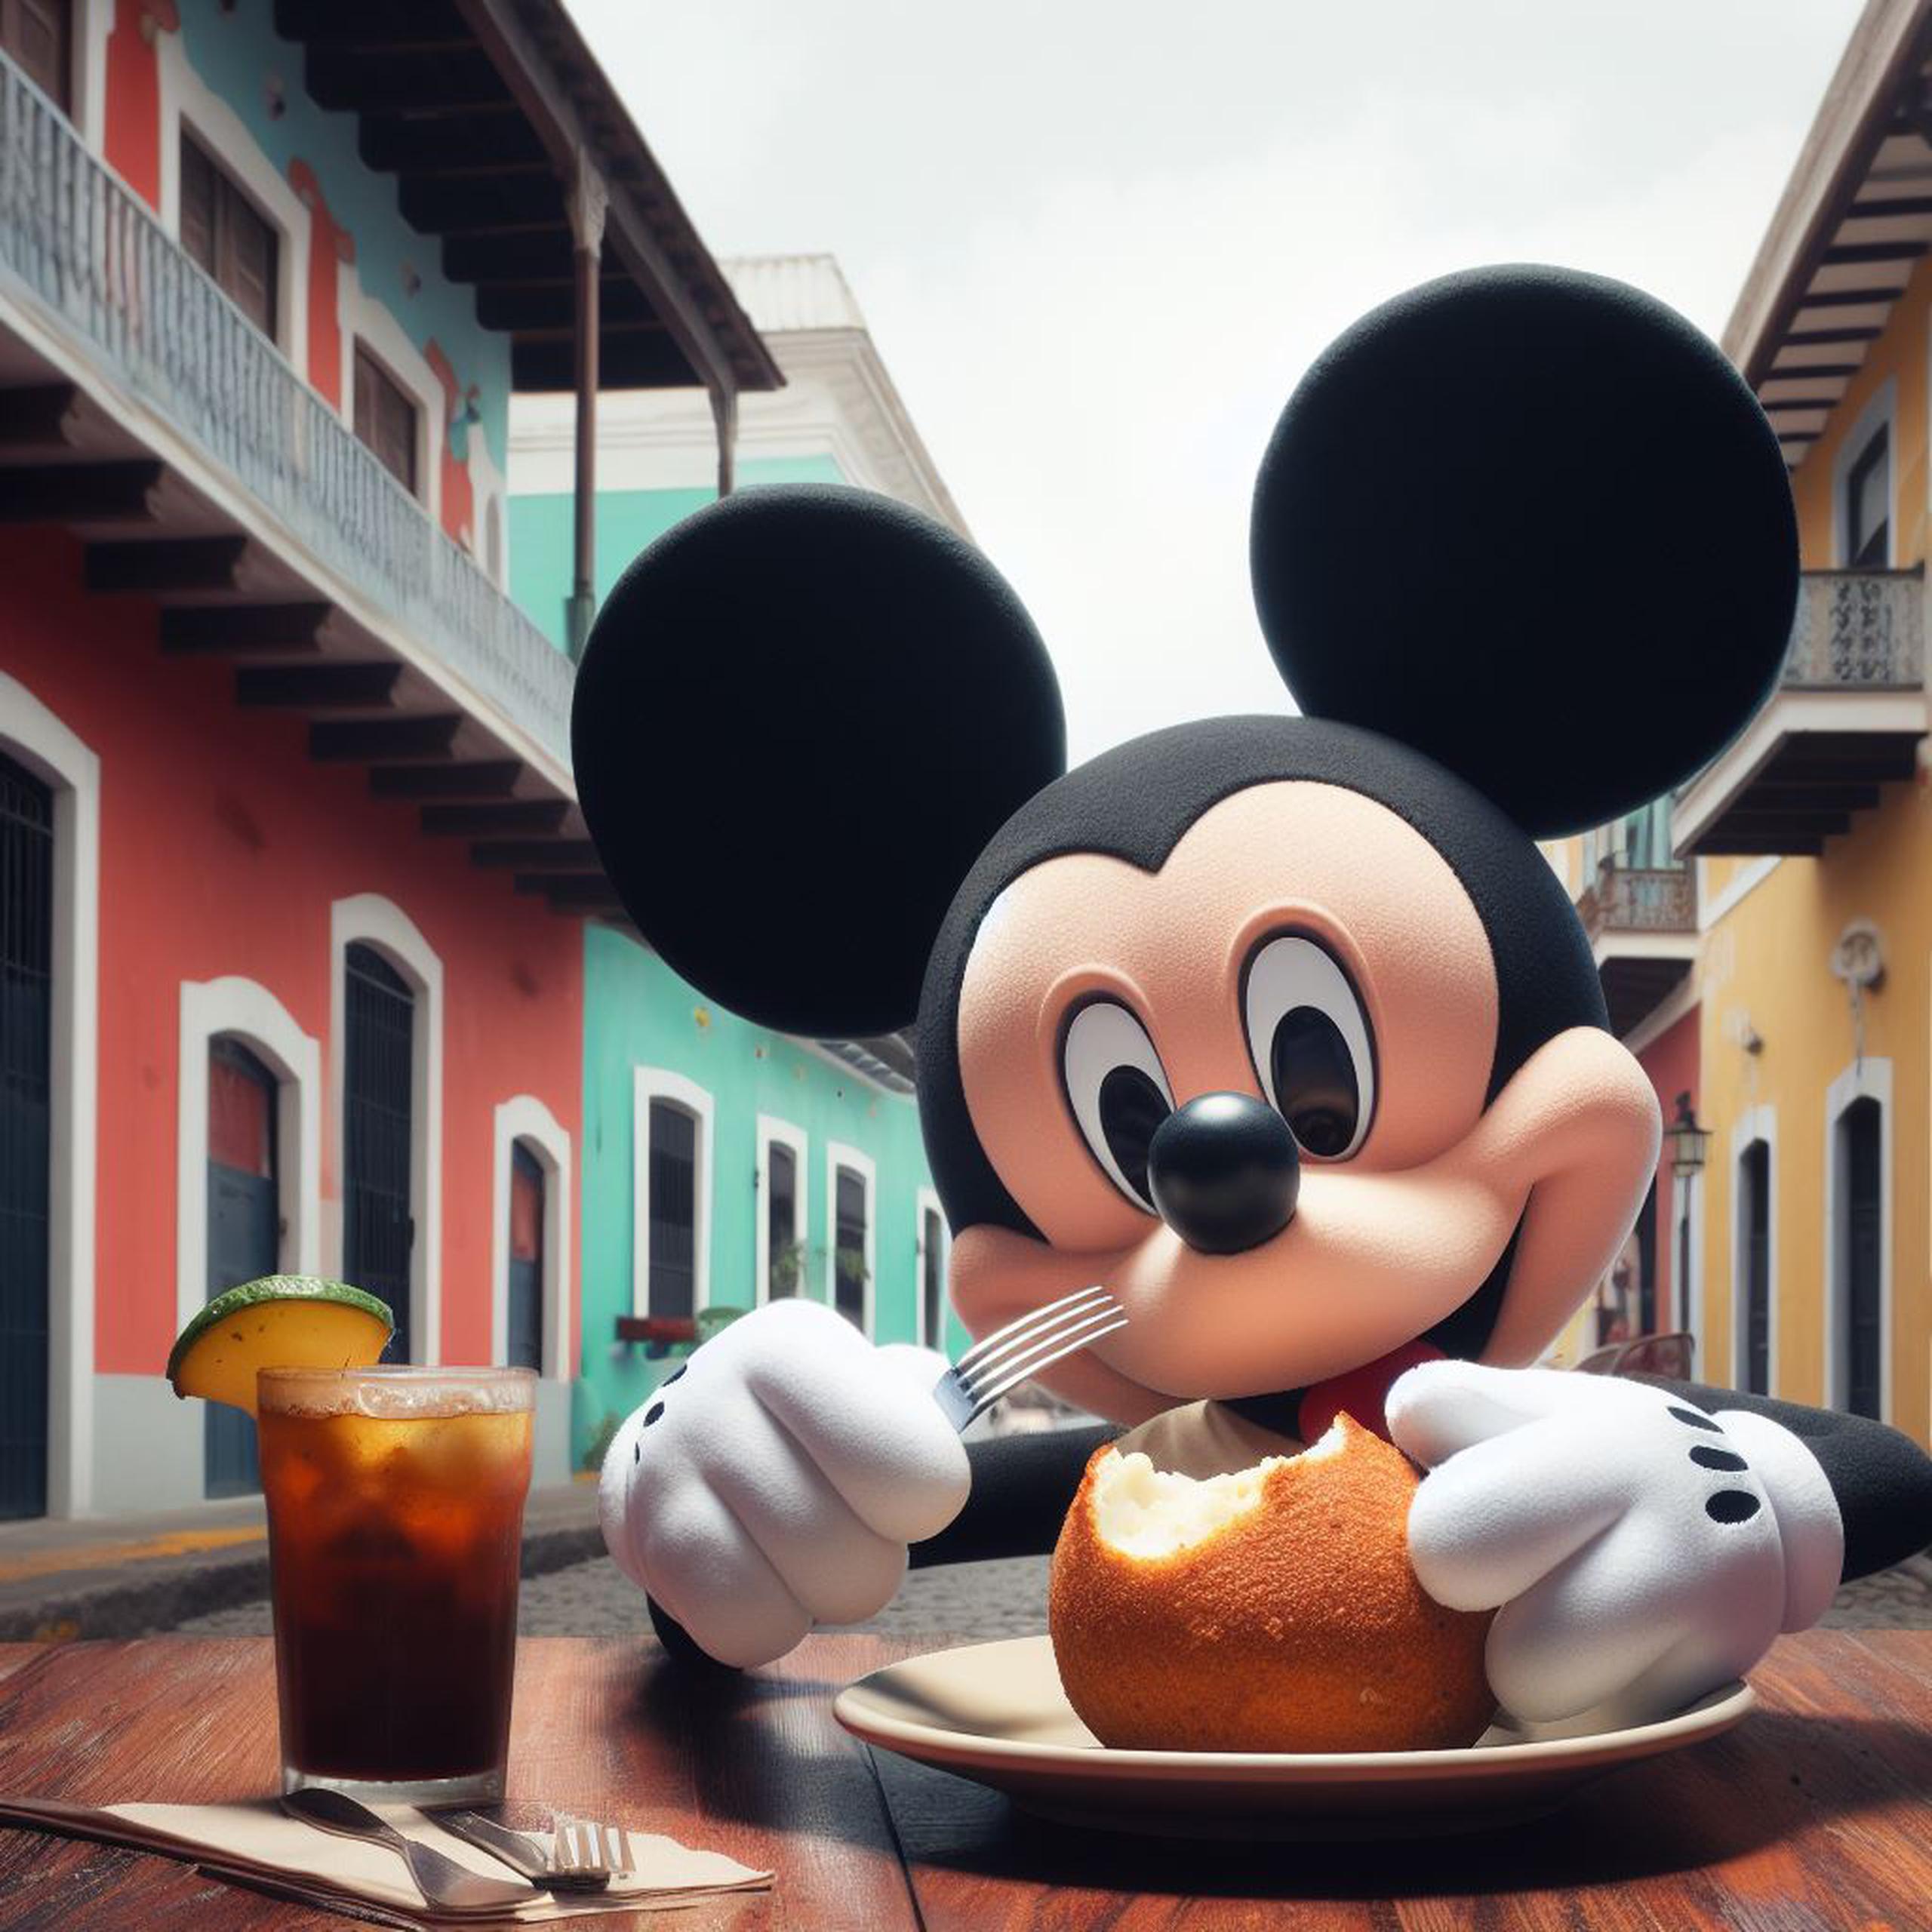 Imágenes producidas con el texto: “Mickey Mouse comiendo mofongo en el Viejo San Juan, Puerto Rico, estilo Disney Pixar”.